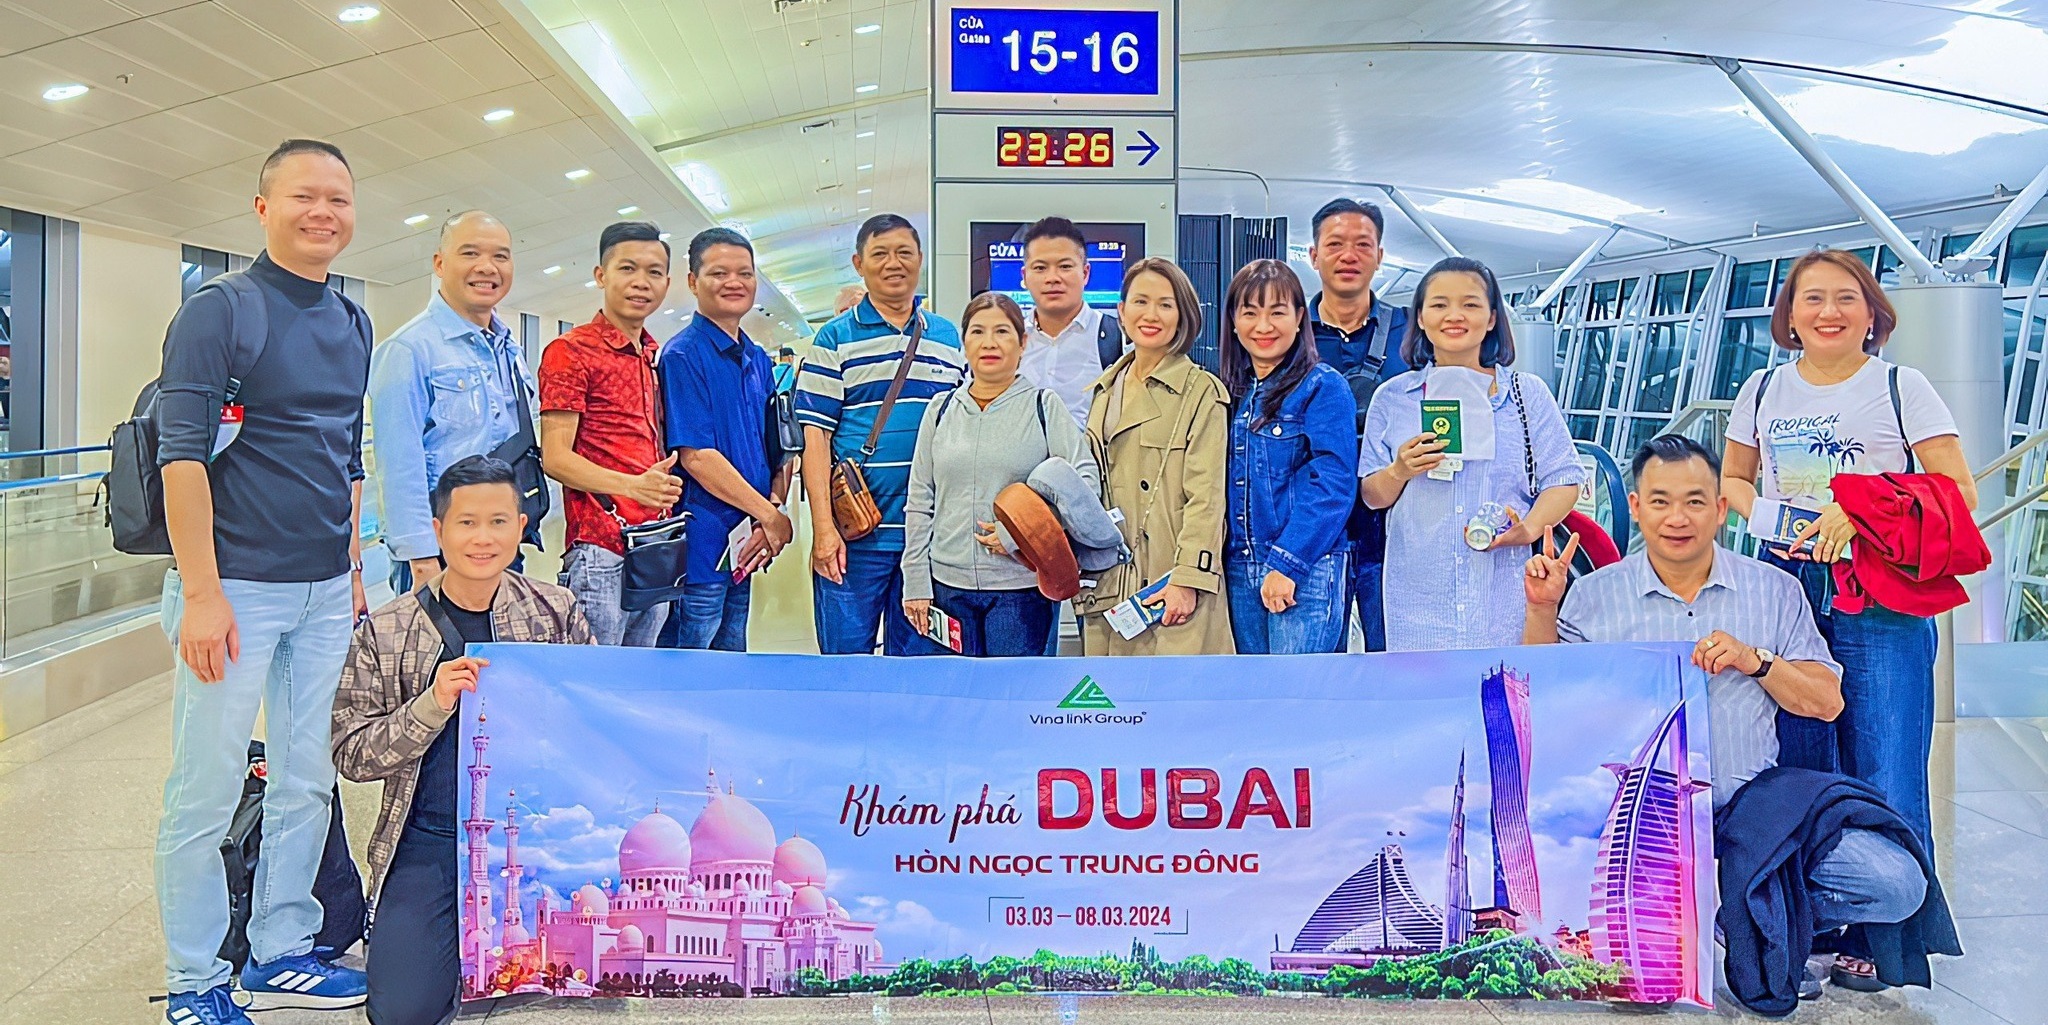 Vinalink Group tri ân Lãnh đạo hệ thống xuất sắc với hành trình du lịch Dubai